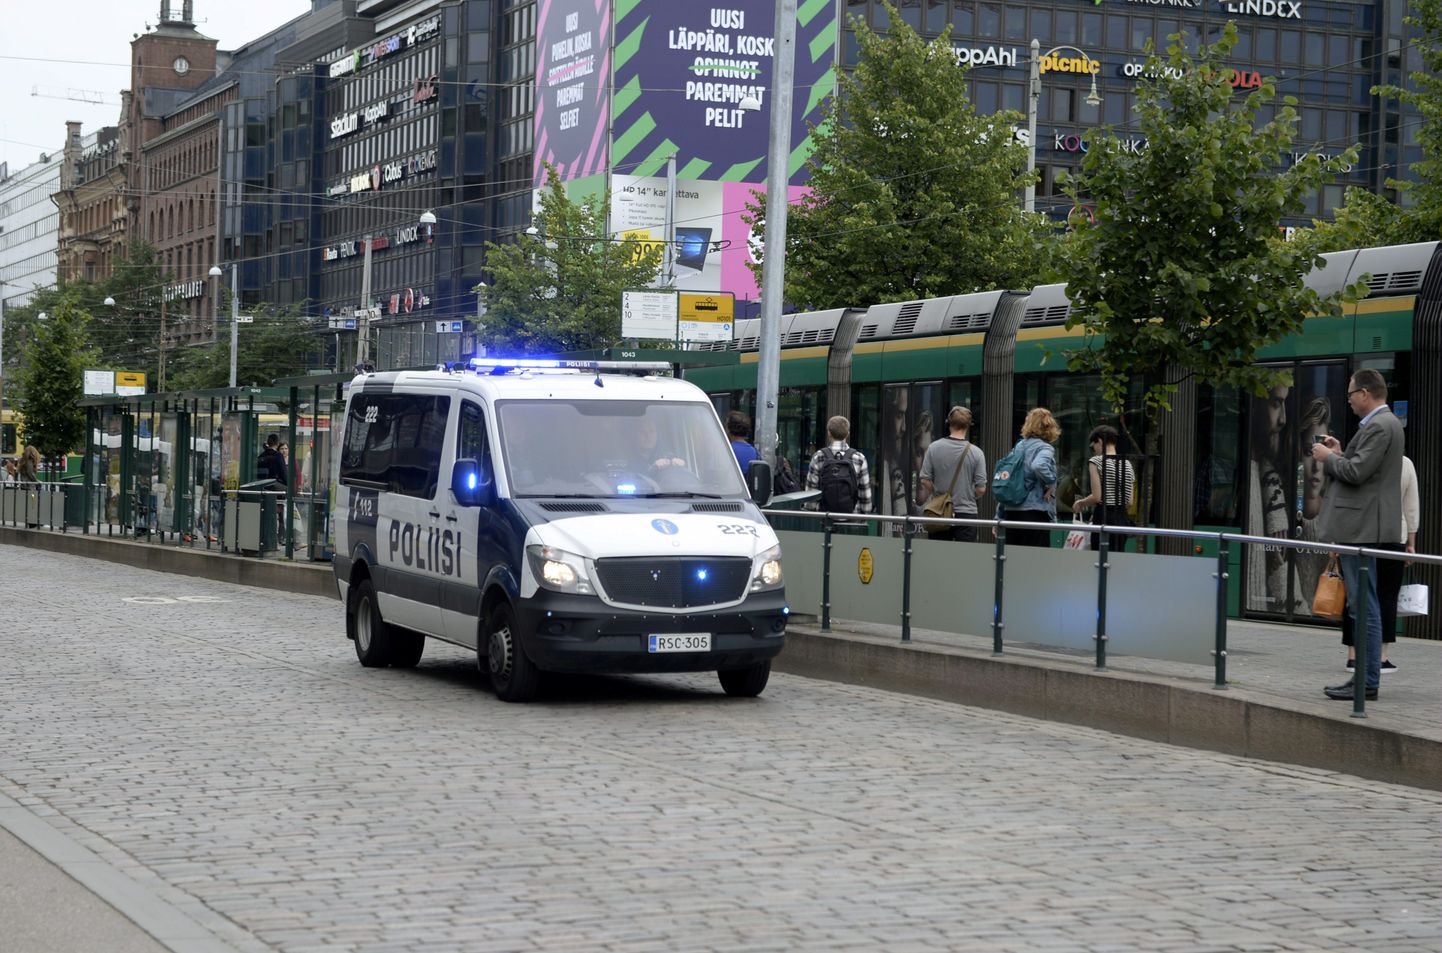 Soome politsei. Pilt on illustratiivne.